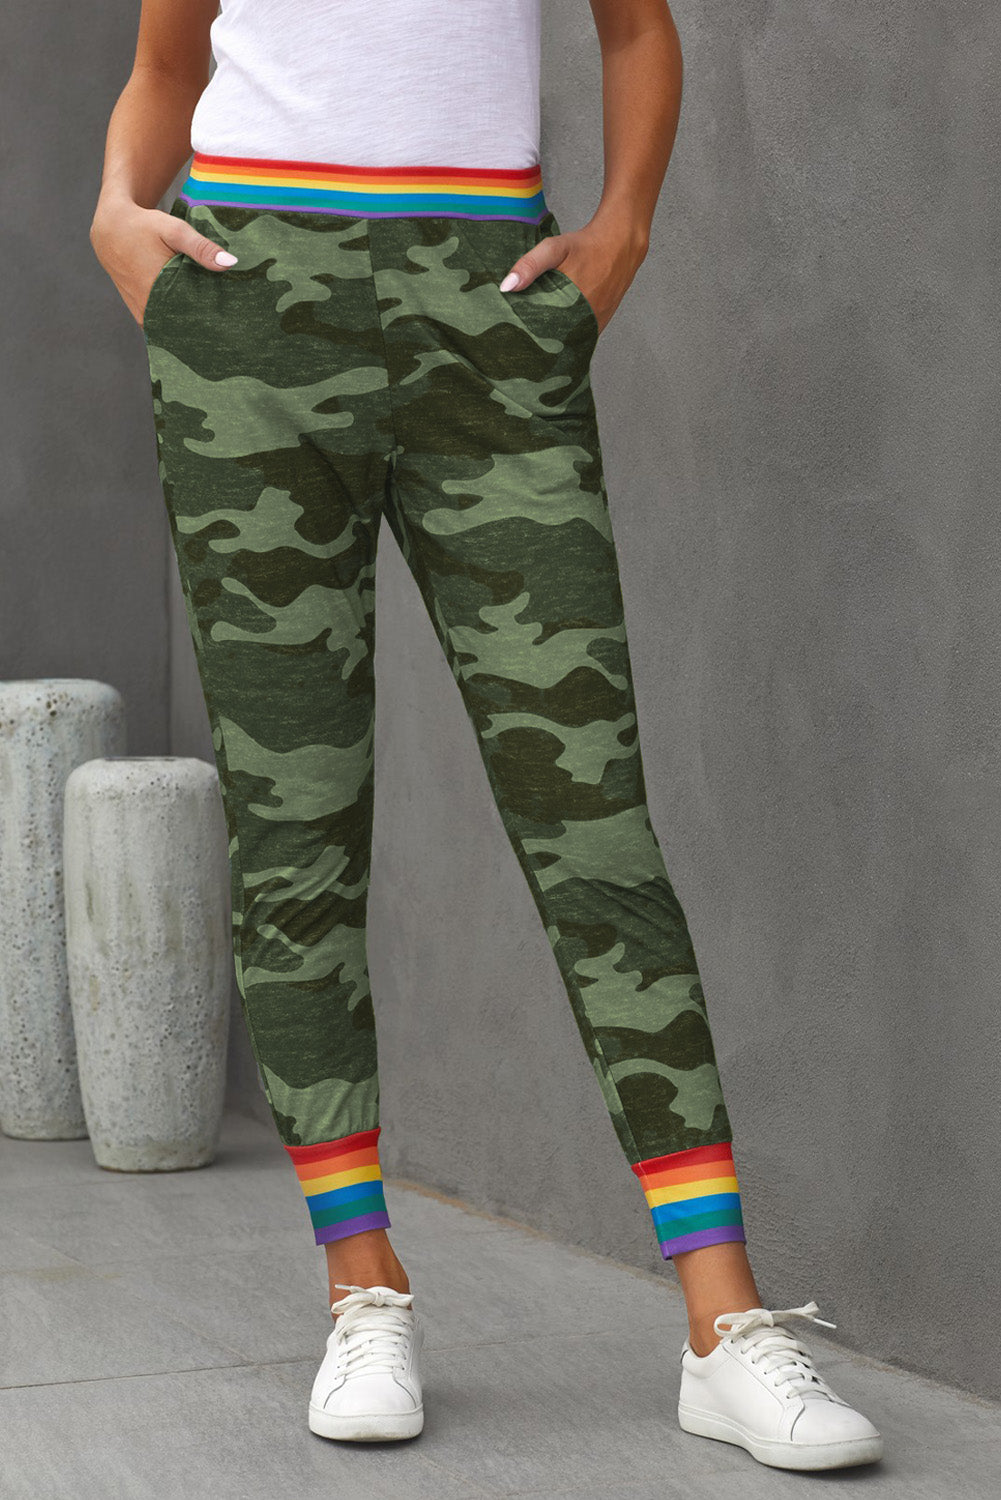 Pantaloni casual mimetici grigi a righe arcobaleno